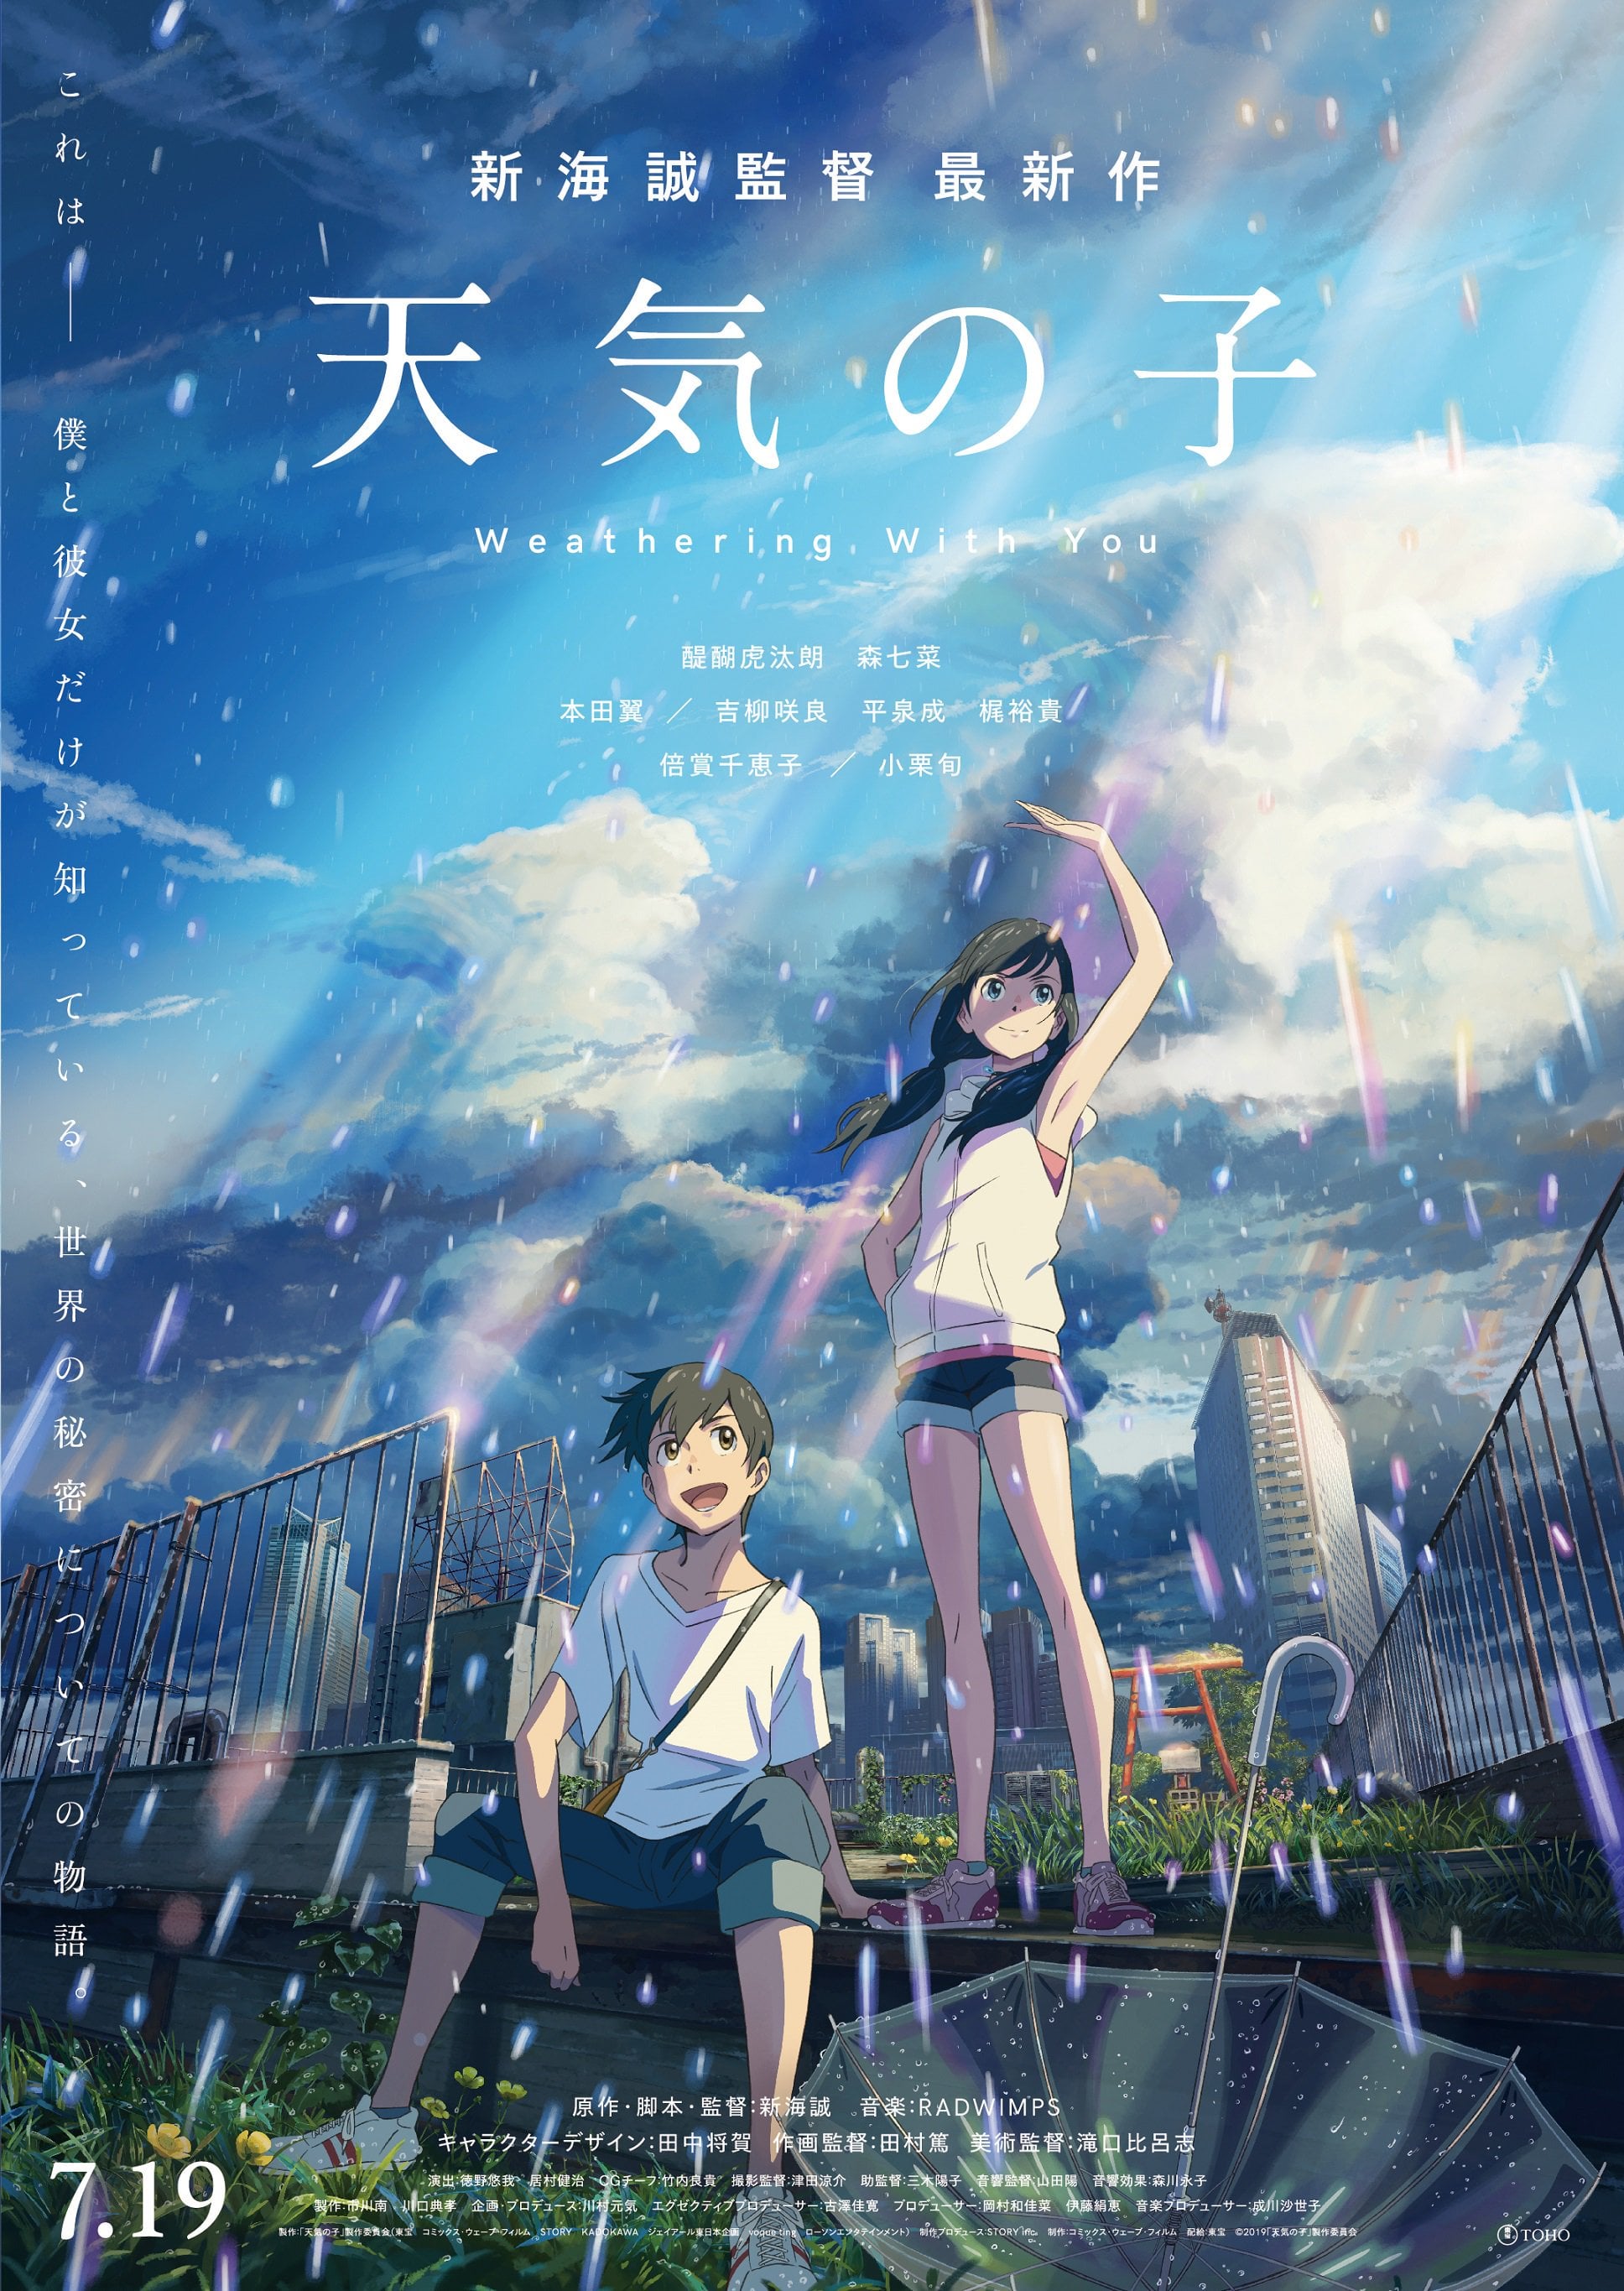 Tenki no Ko: la nueva película del director de Kimi no na wa